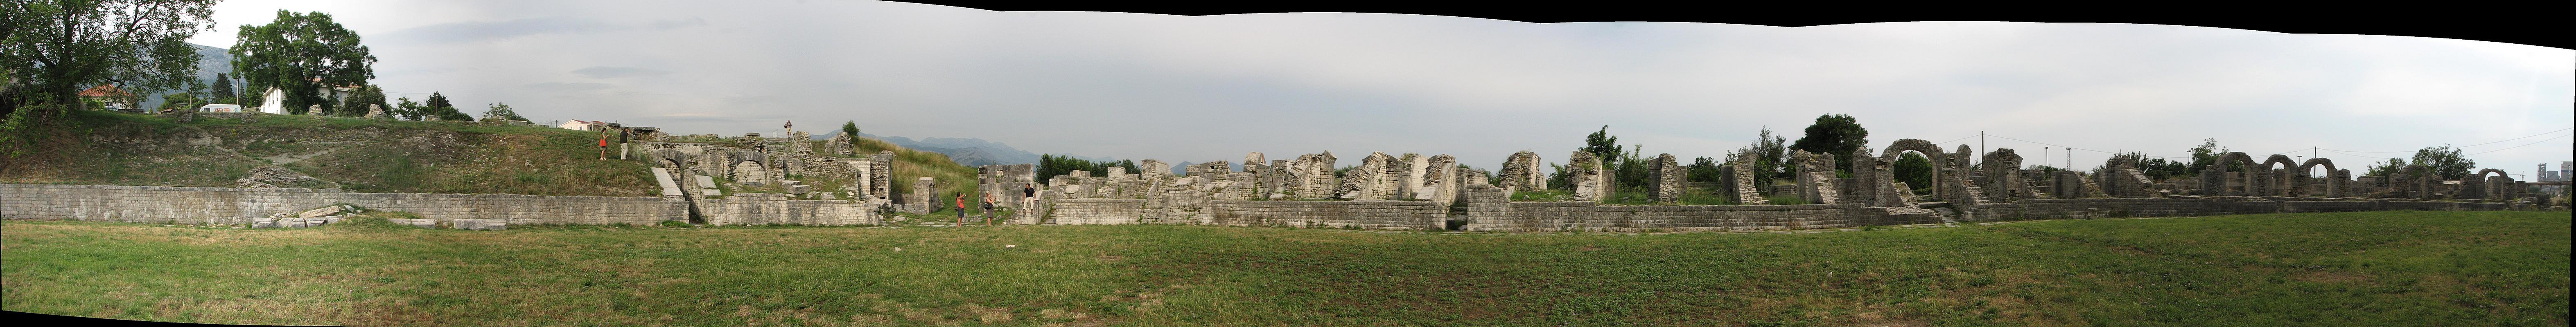 Remains of a Roman Amphitheatre